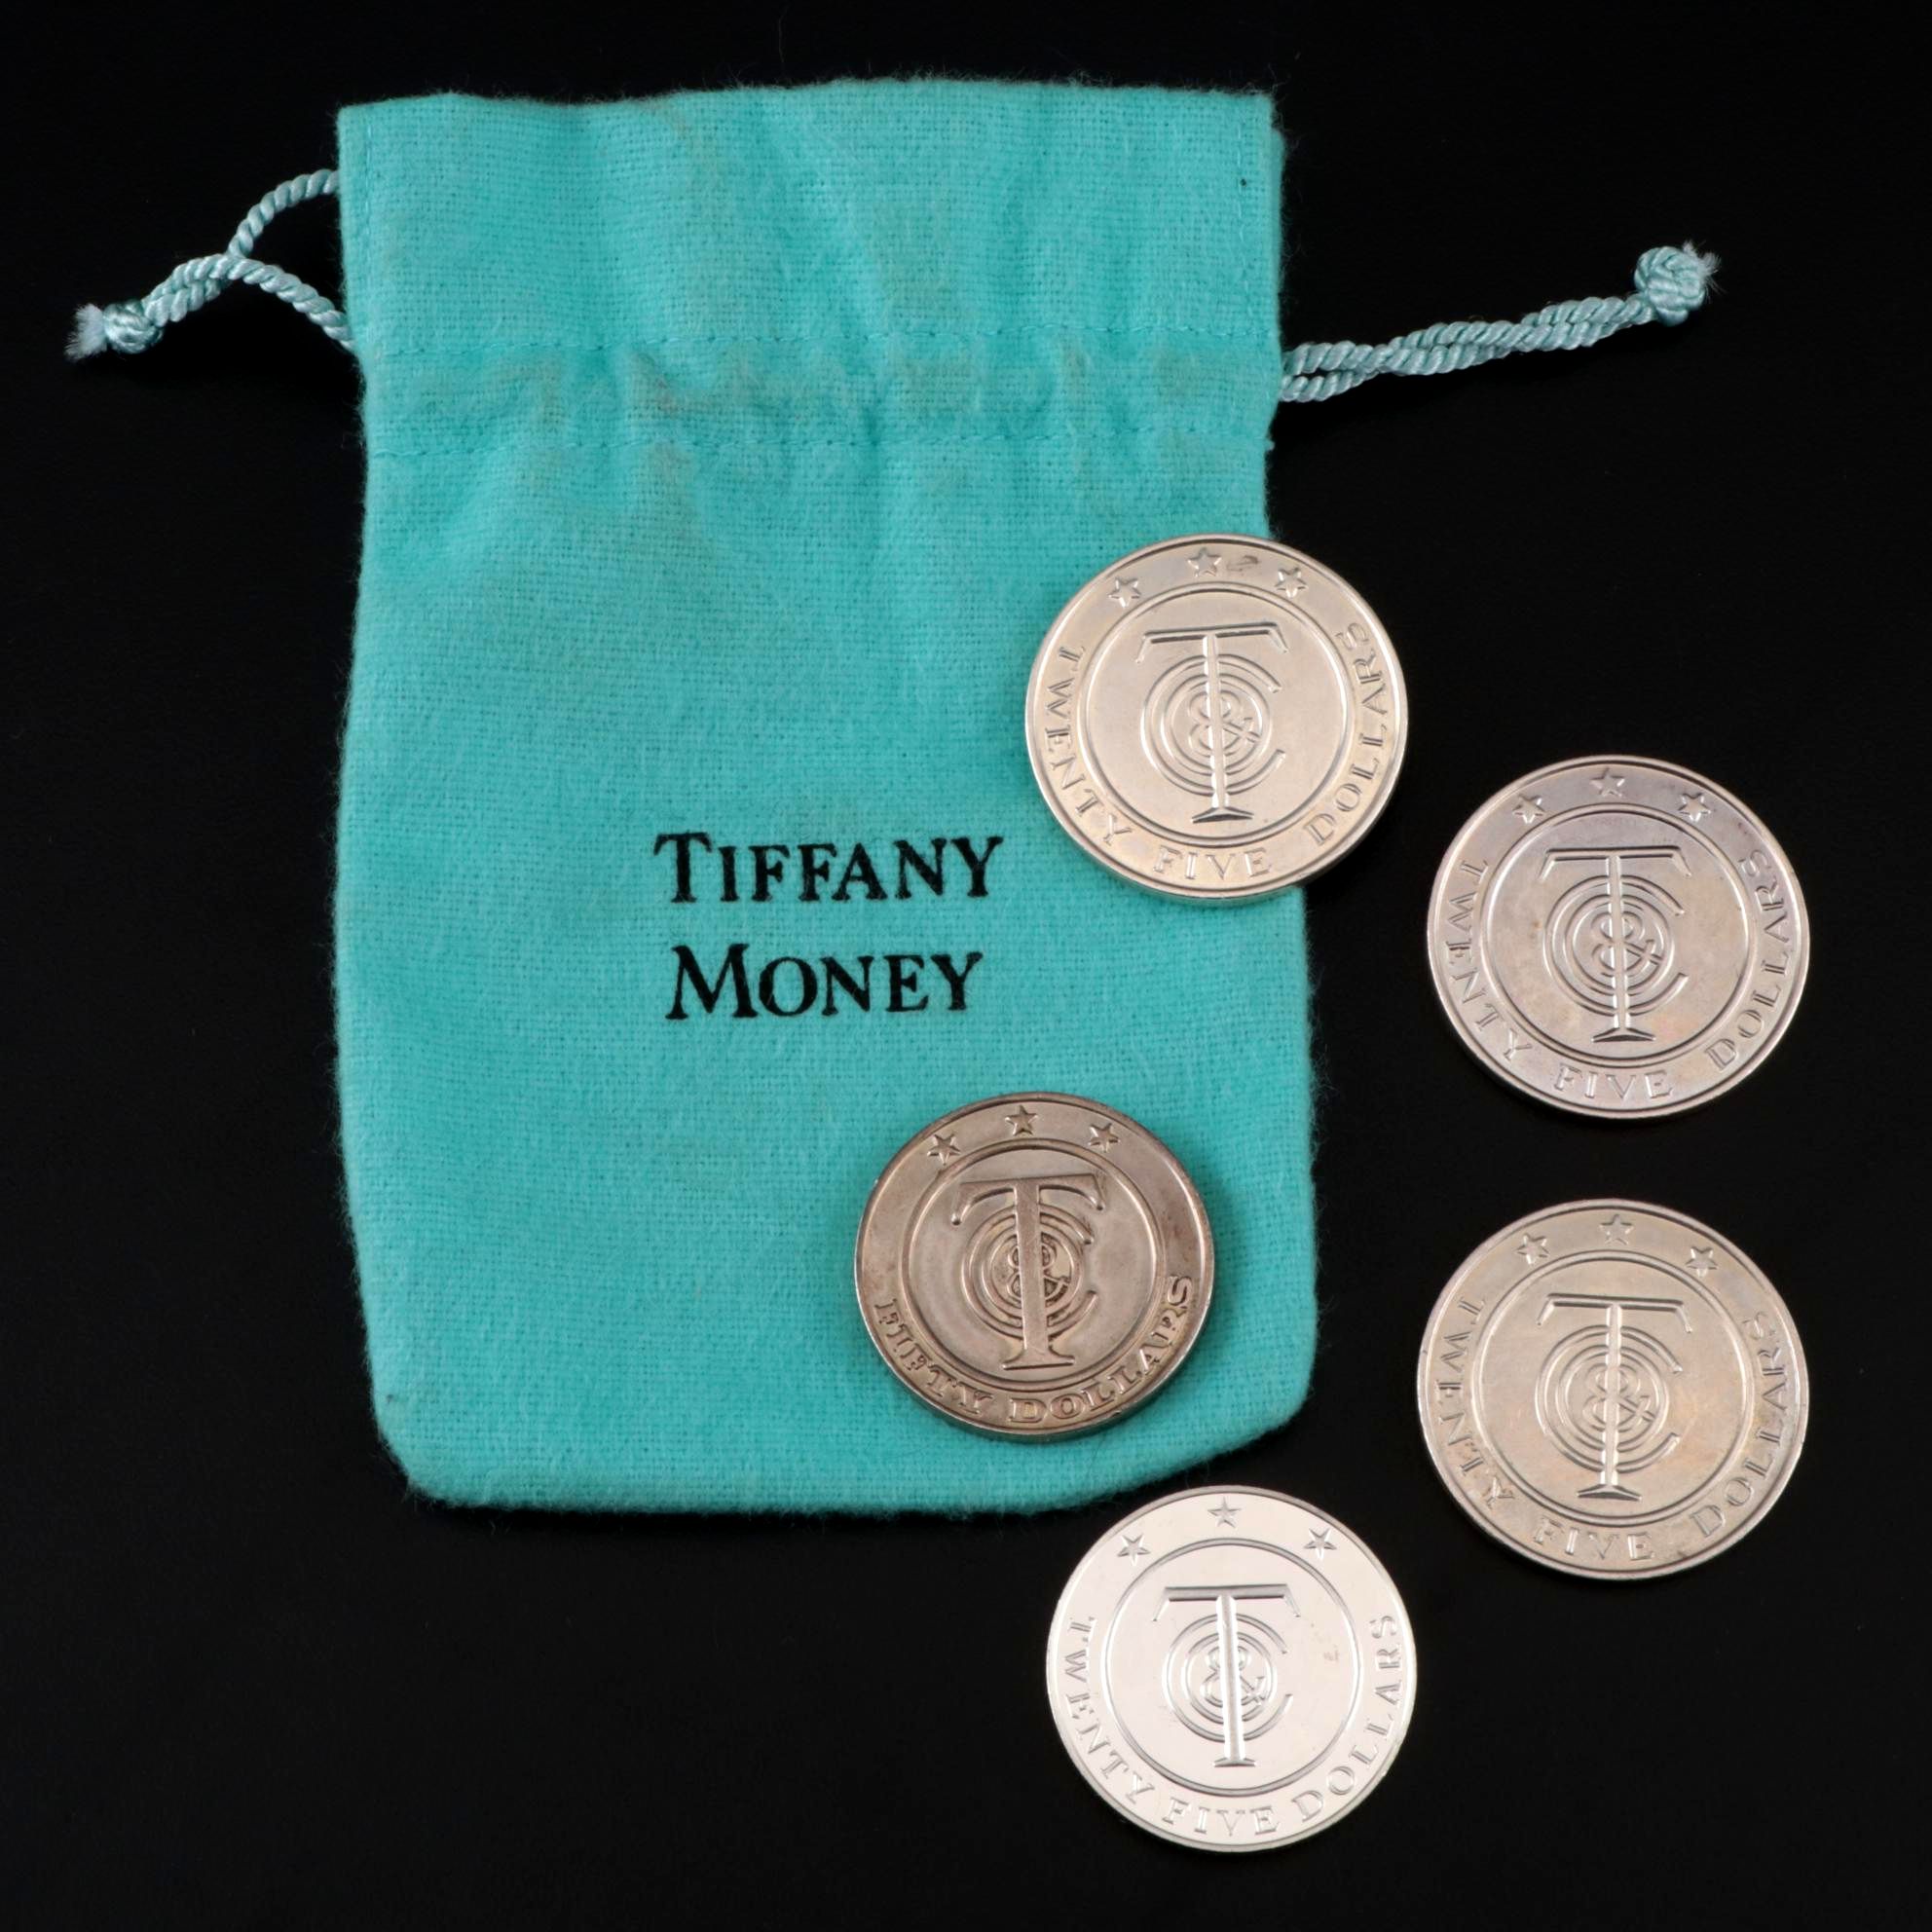 tiffany money $25 coin